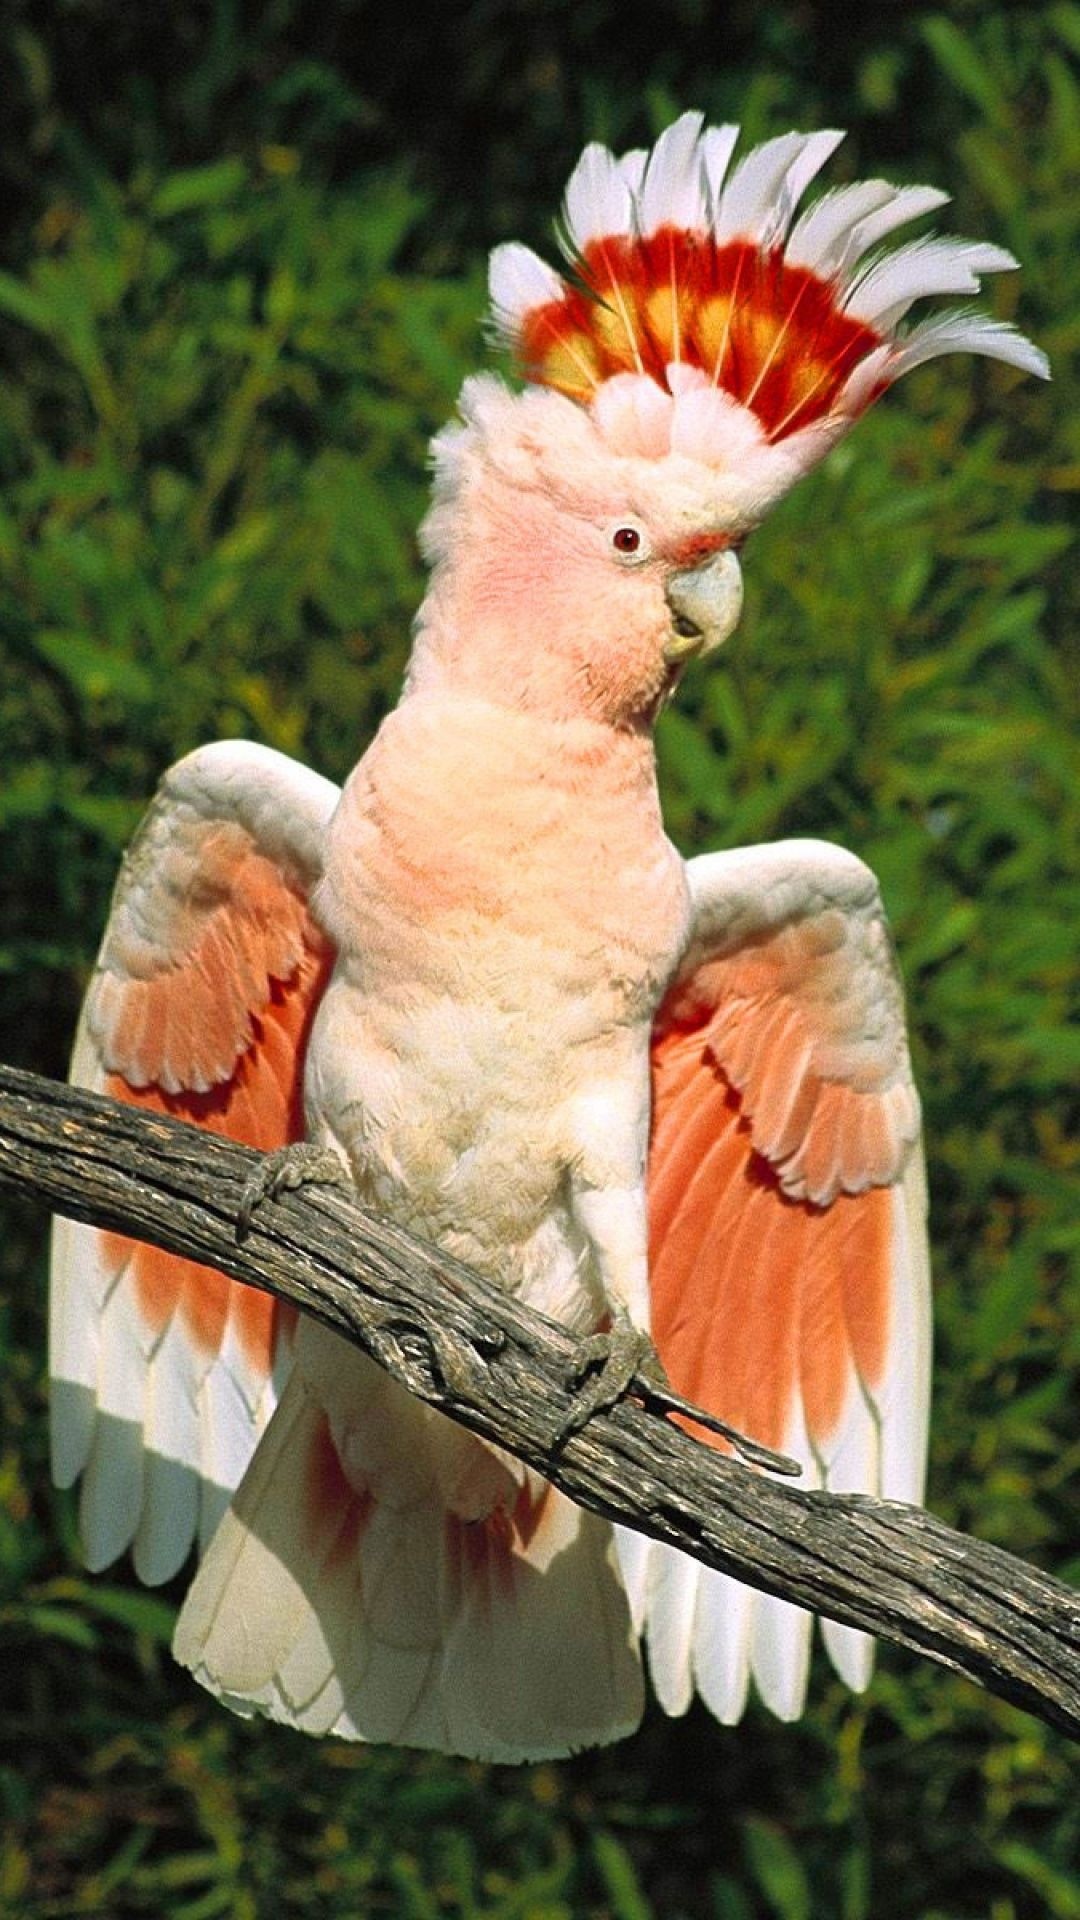 Cockatoo: Inca Parrot, Bright Color Plumage, Subtropical Region. 1080x1920 Full HD Wallpaper.